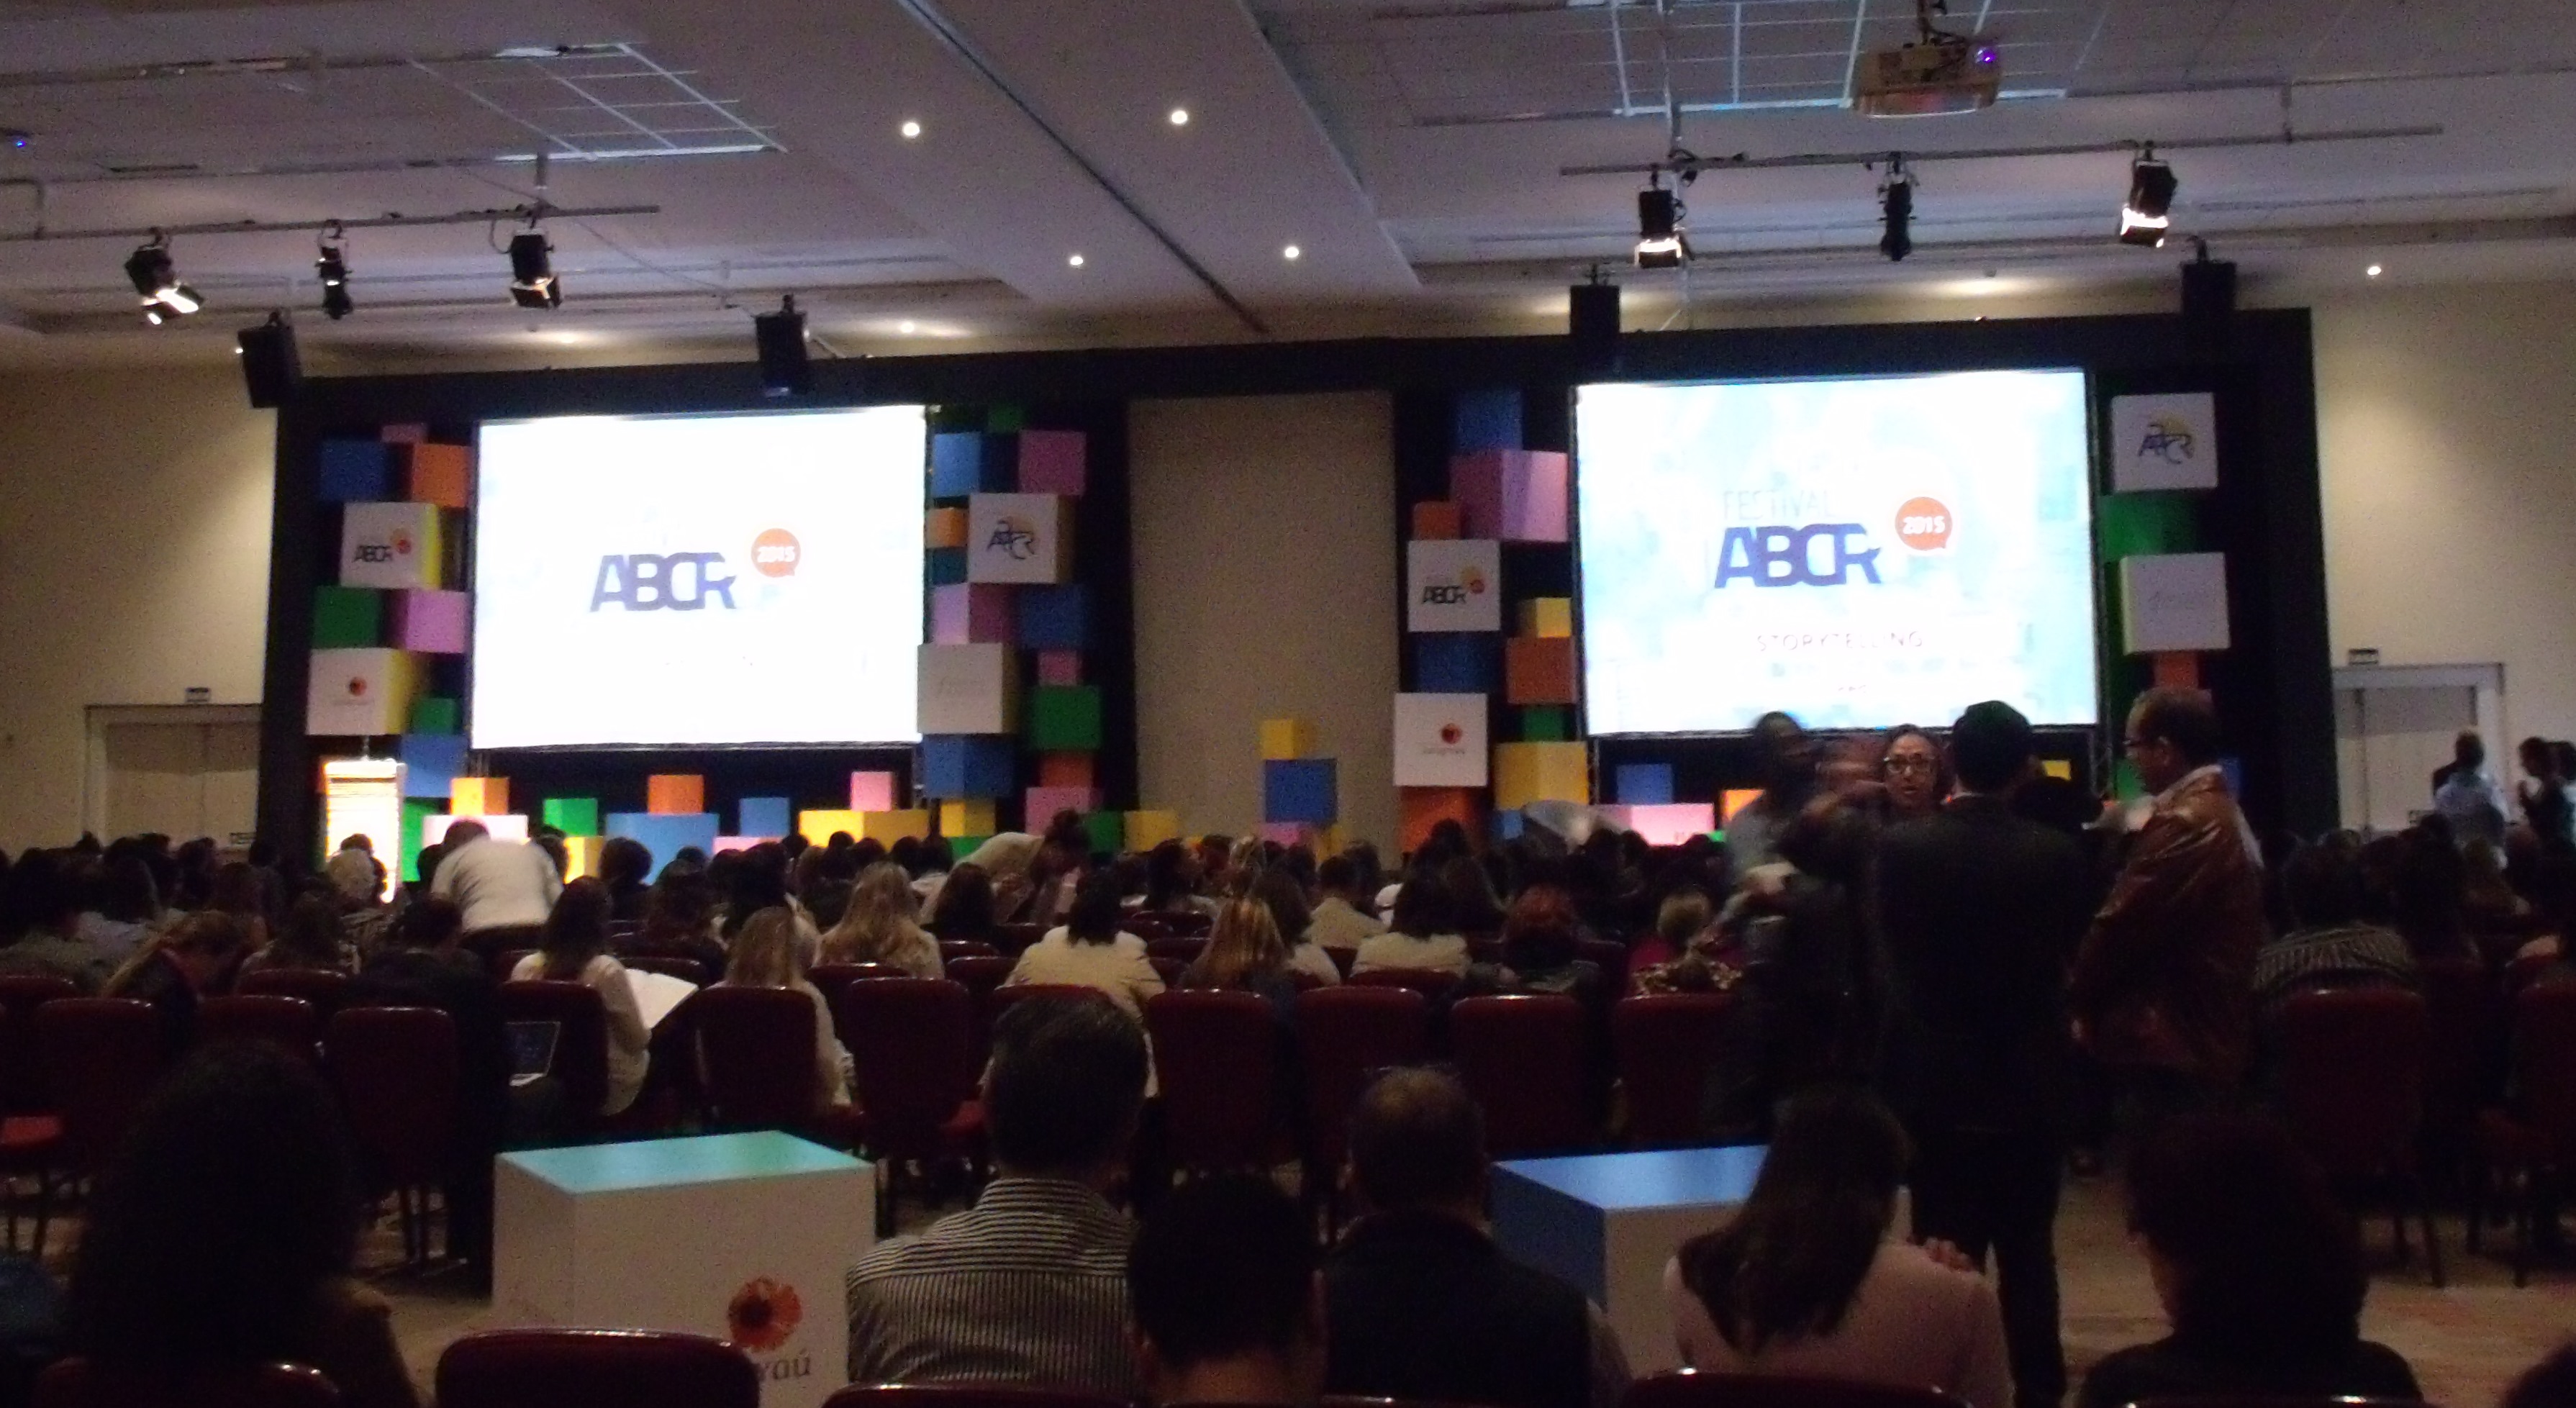 Foto tirada em um salão de eventos com muitas pessoas sentadas, de costas, e observando dois telões ao fundo